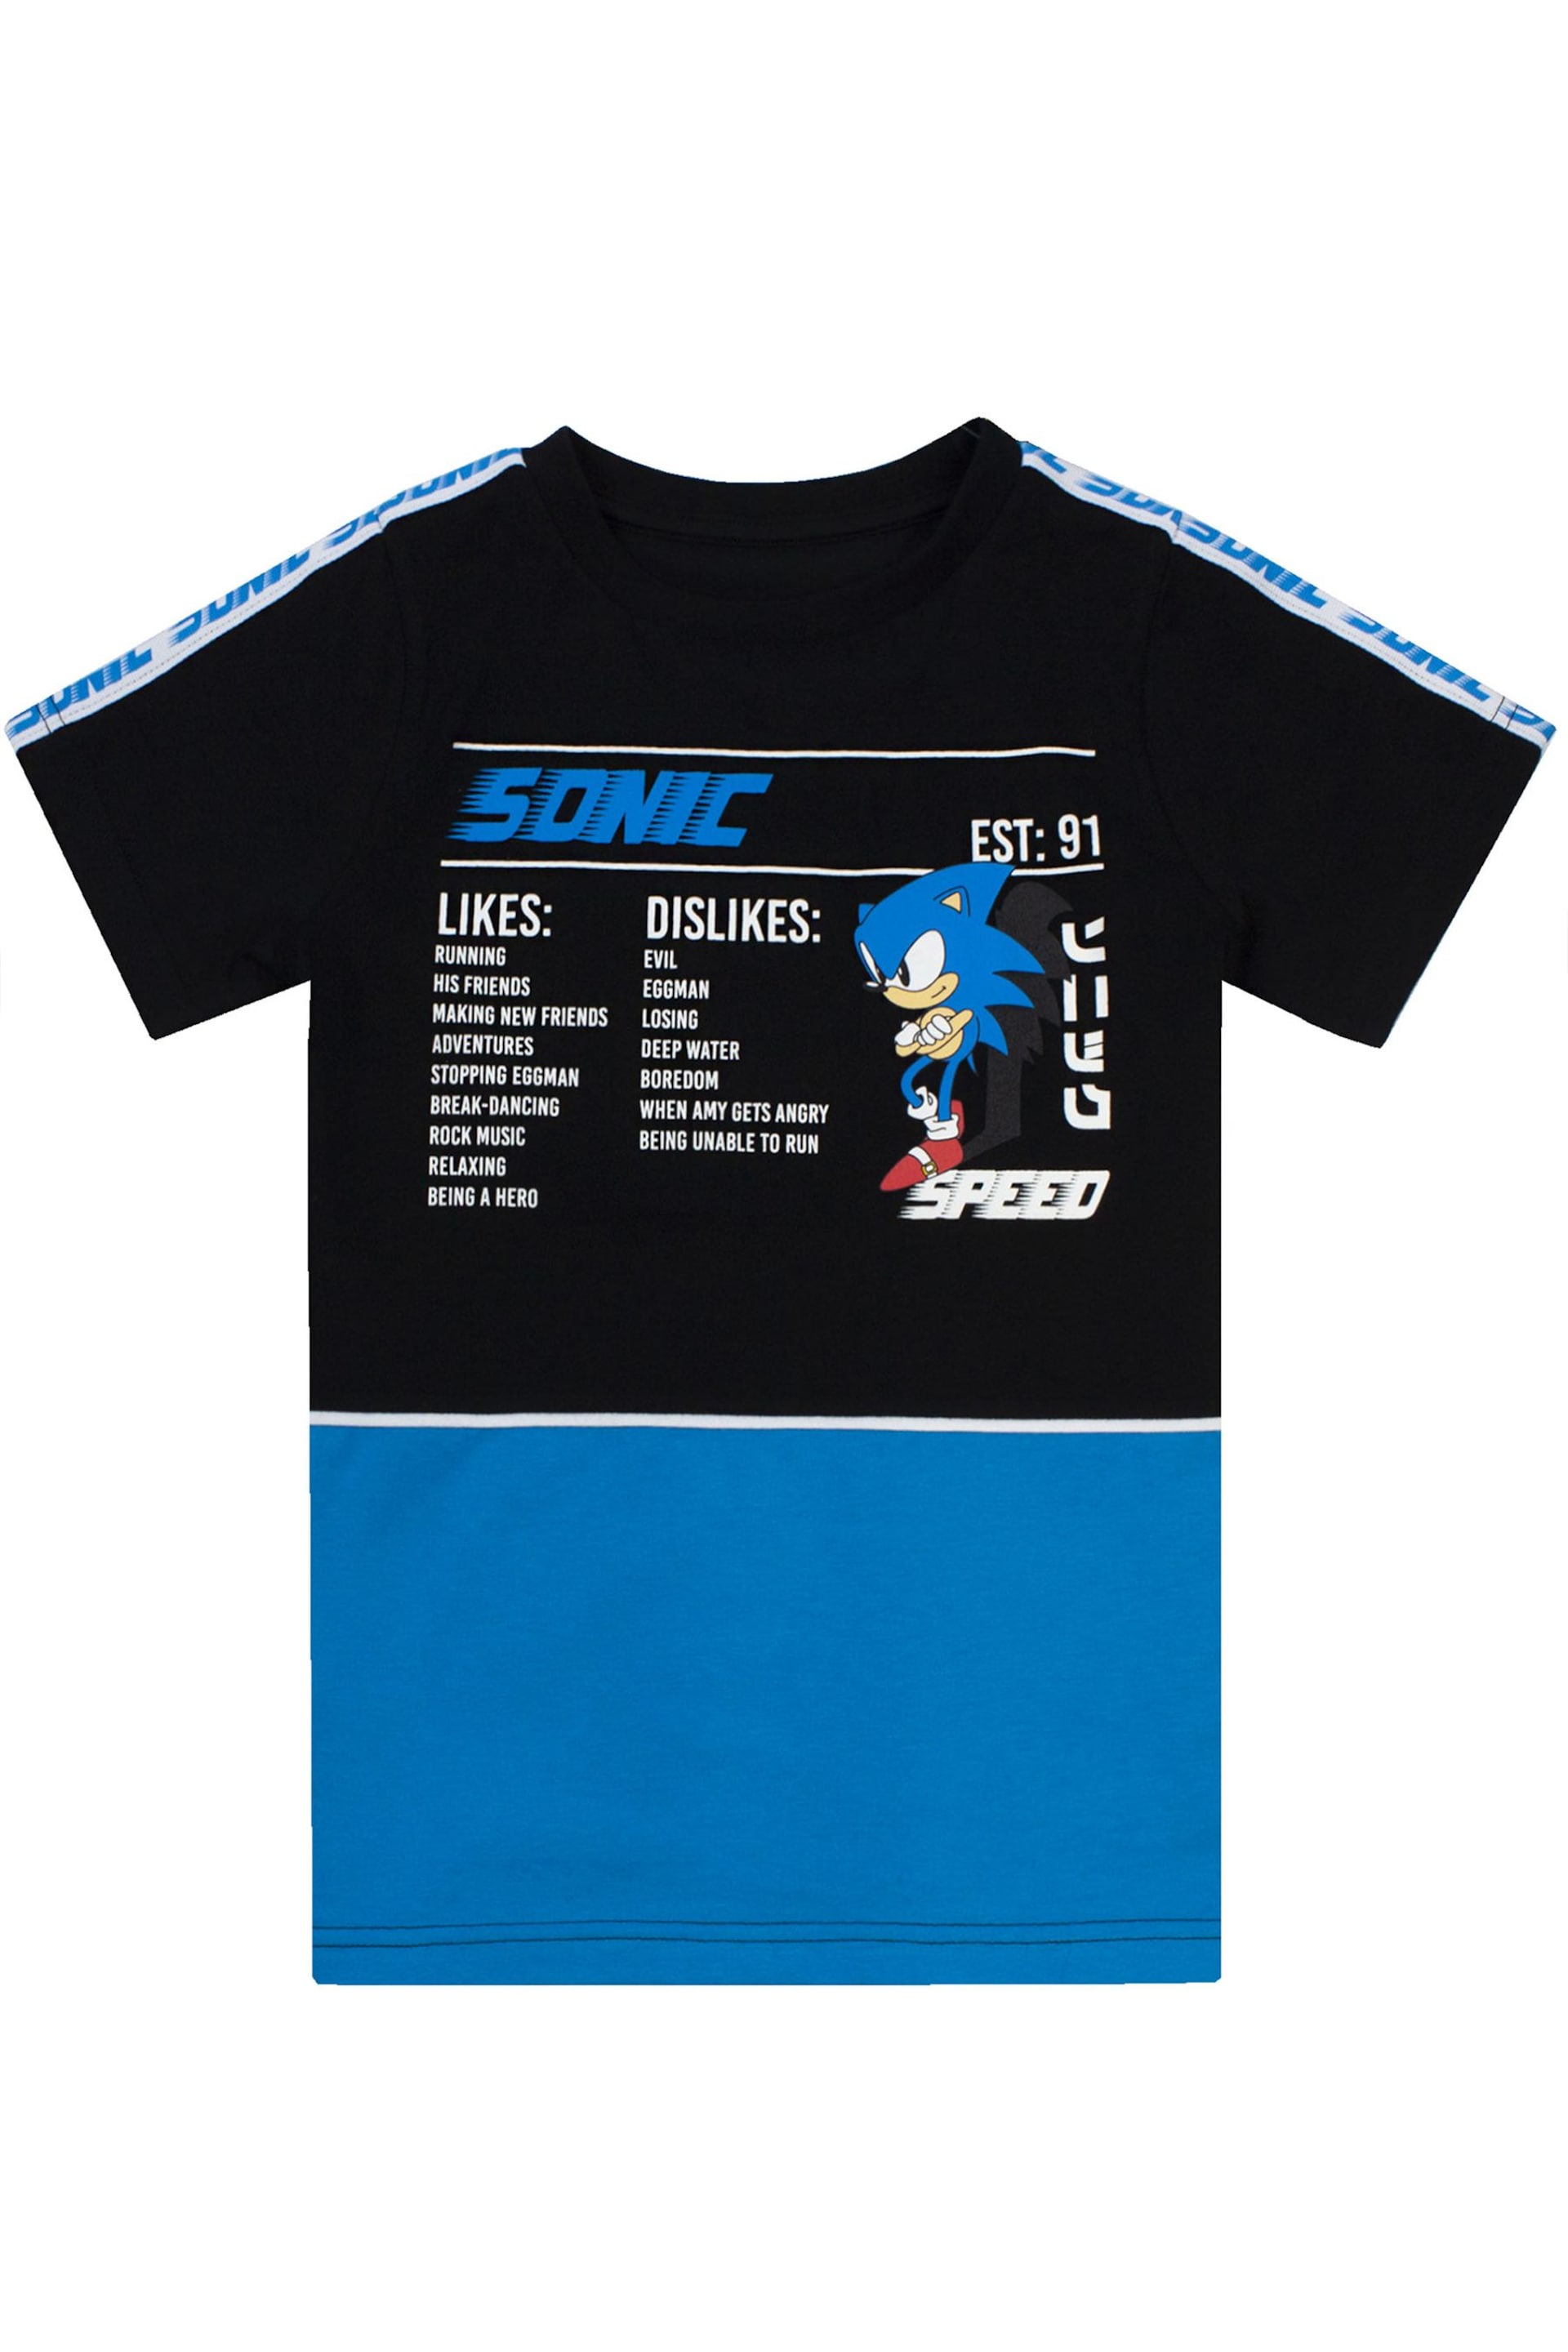 Vanilla Underground Black Sonic Gaming T-Shirt - Image 1 of 3